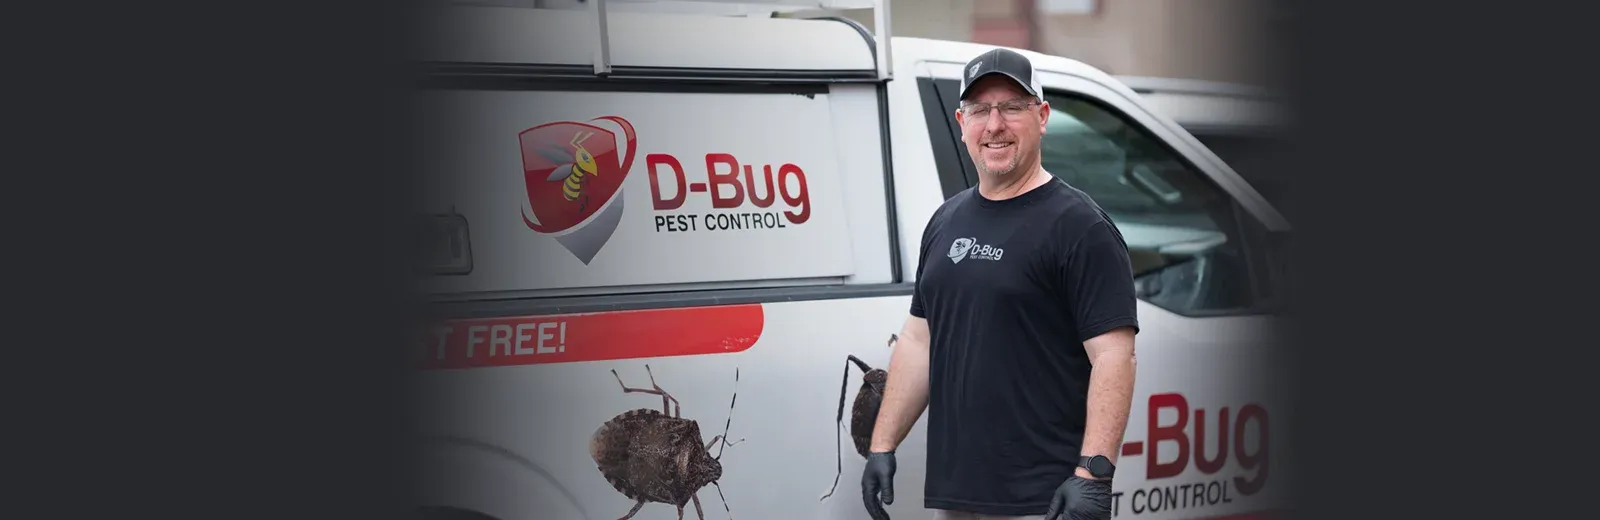 D-Bug Pest Technician standing next to truck